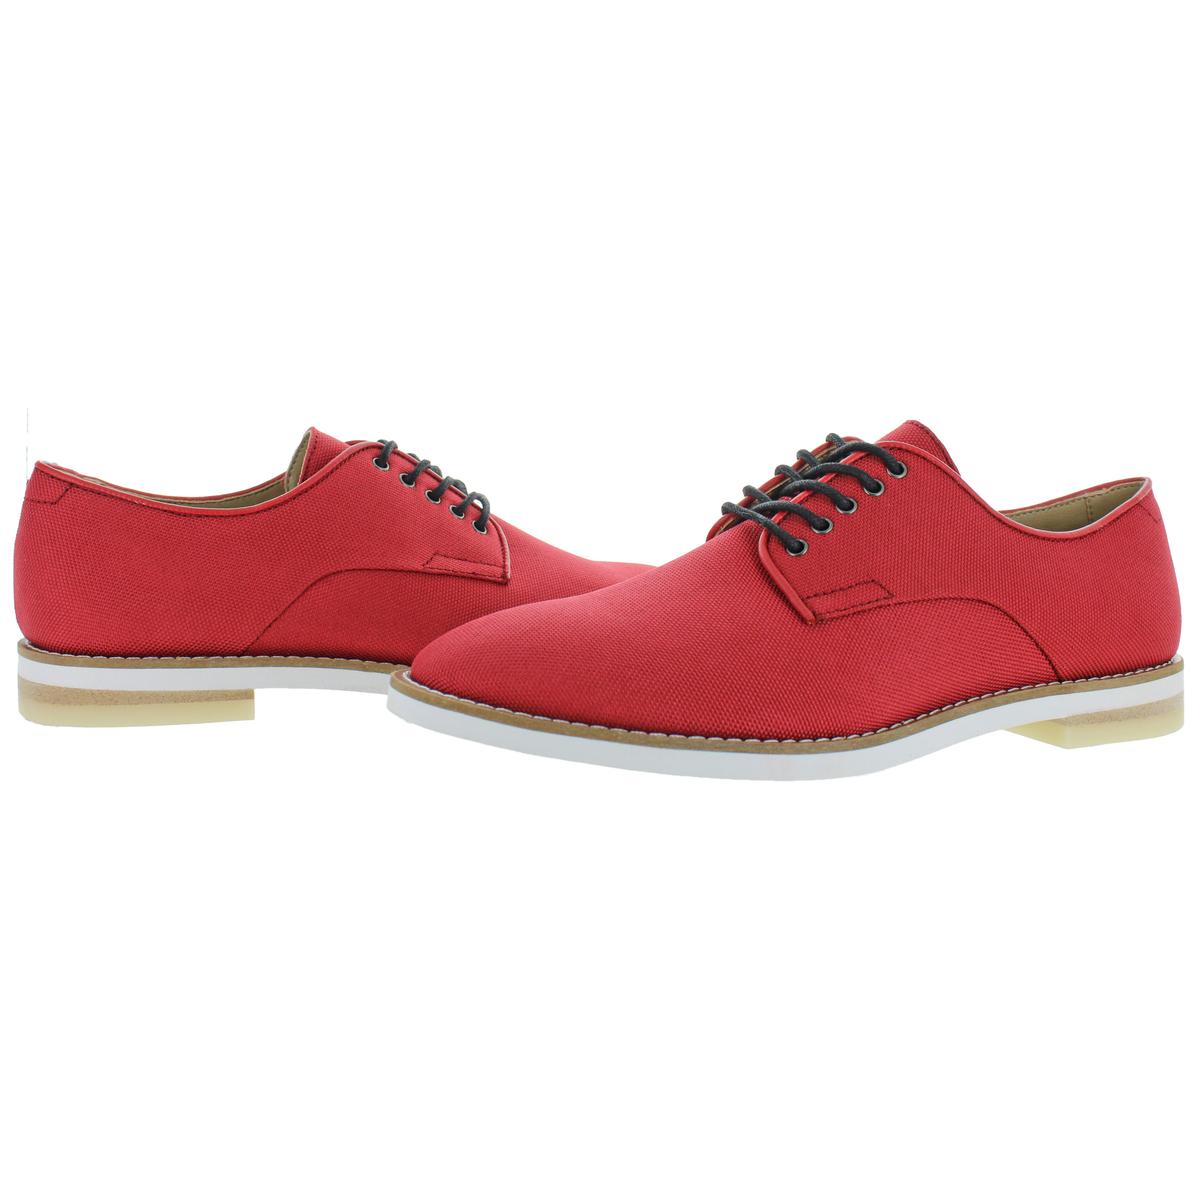 Calvin Klein Mens Aggussie Nylon Red Oxfords Shoes 7.5 Medium (D) BHFO ...